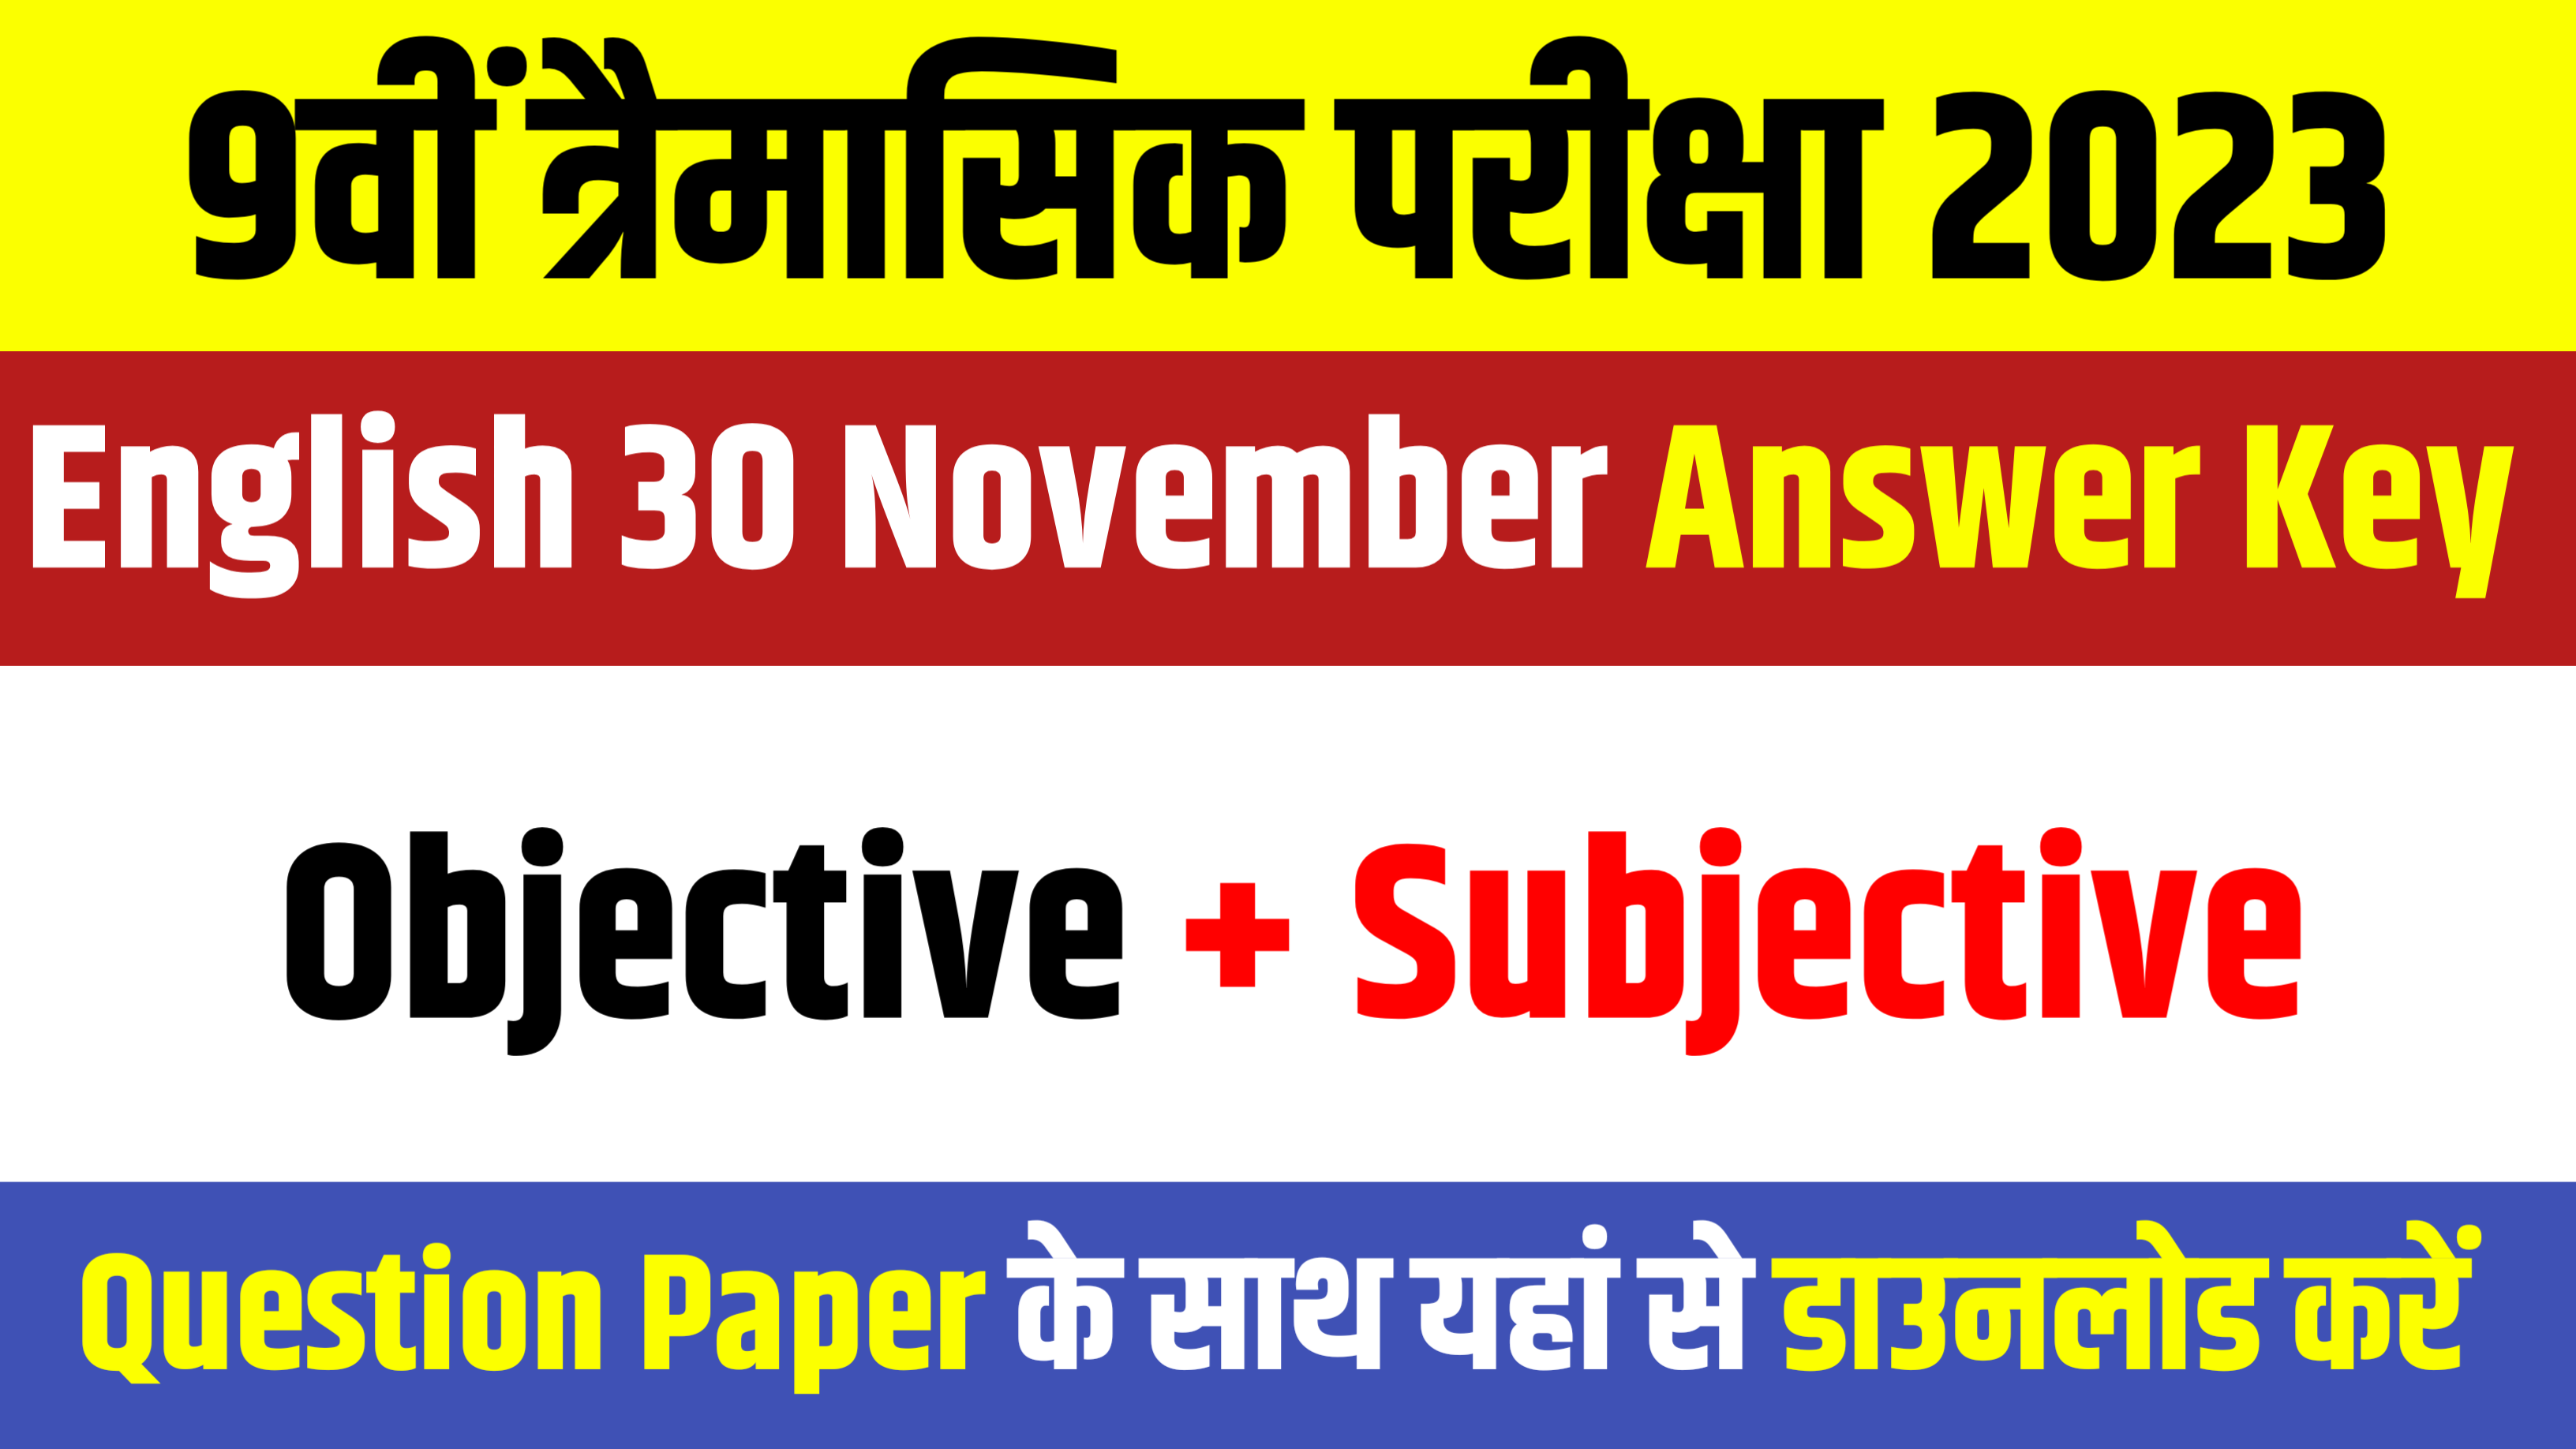 9th English Objective Subjective 30 November: